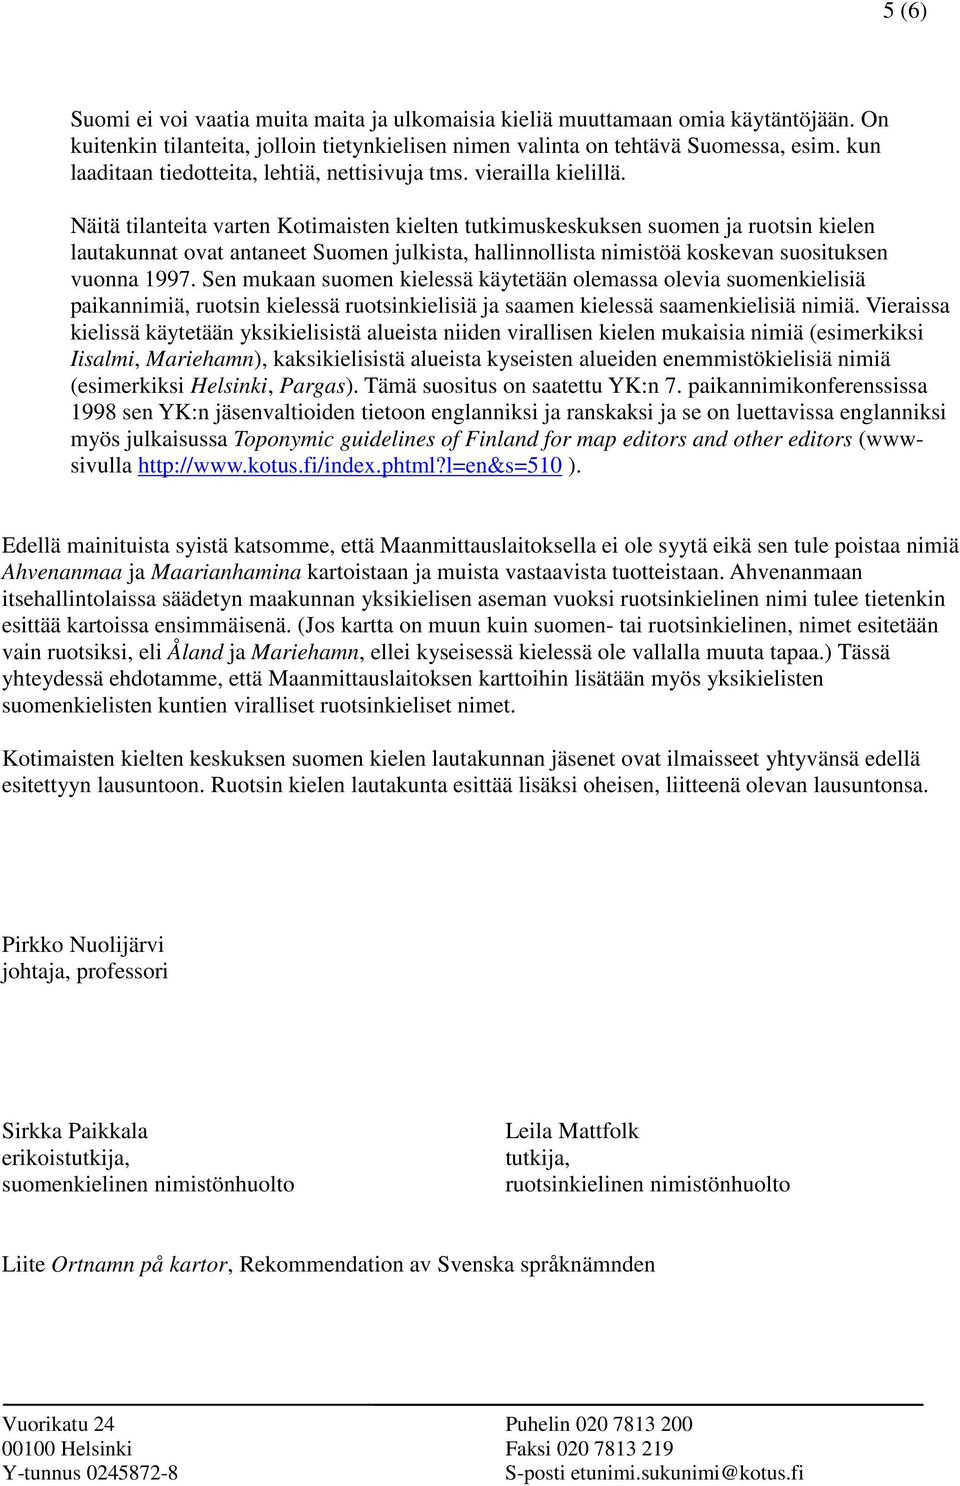 Näitä tilanteita varten Kotimaisten kielten tutkimuskeskuksen suomen ja ruotsin kielen lautakunnat ovat antaneet Suomen julkista, hallinnollista nimistöä koskevan suosituksen vuonna 1997.